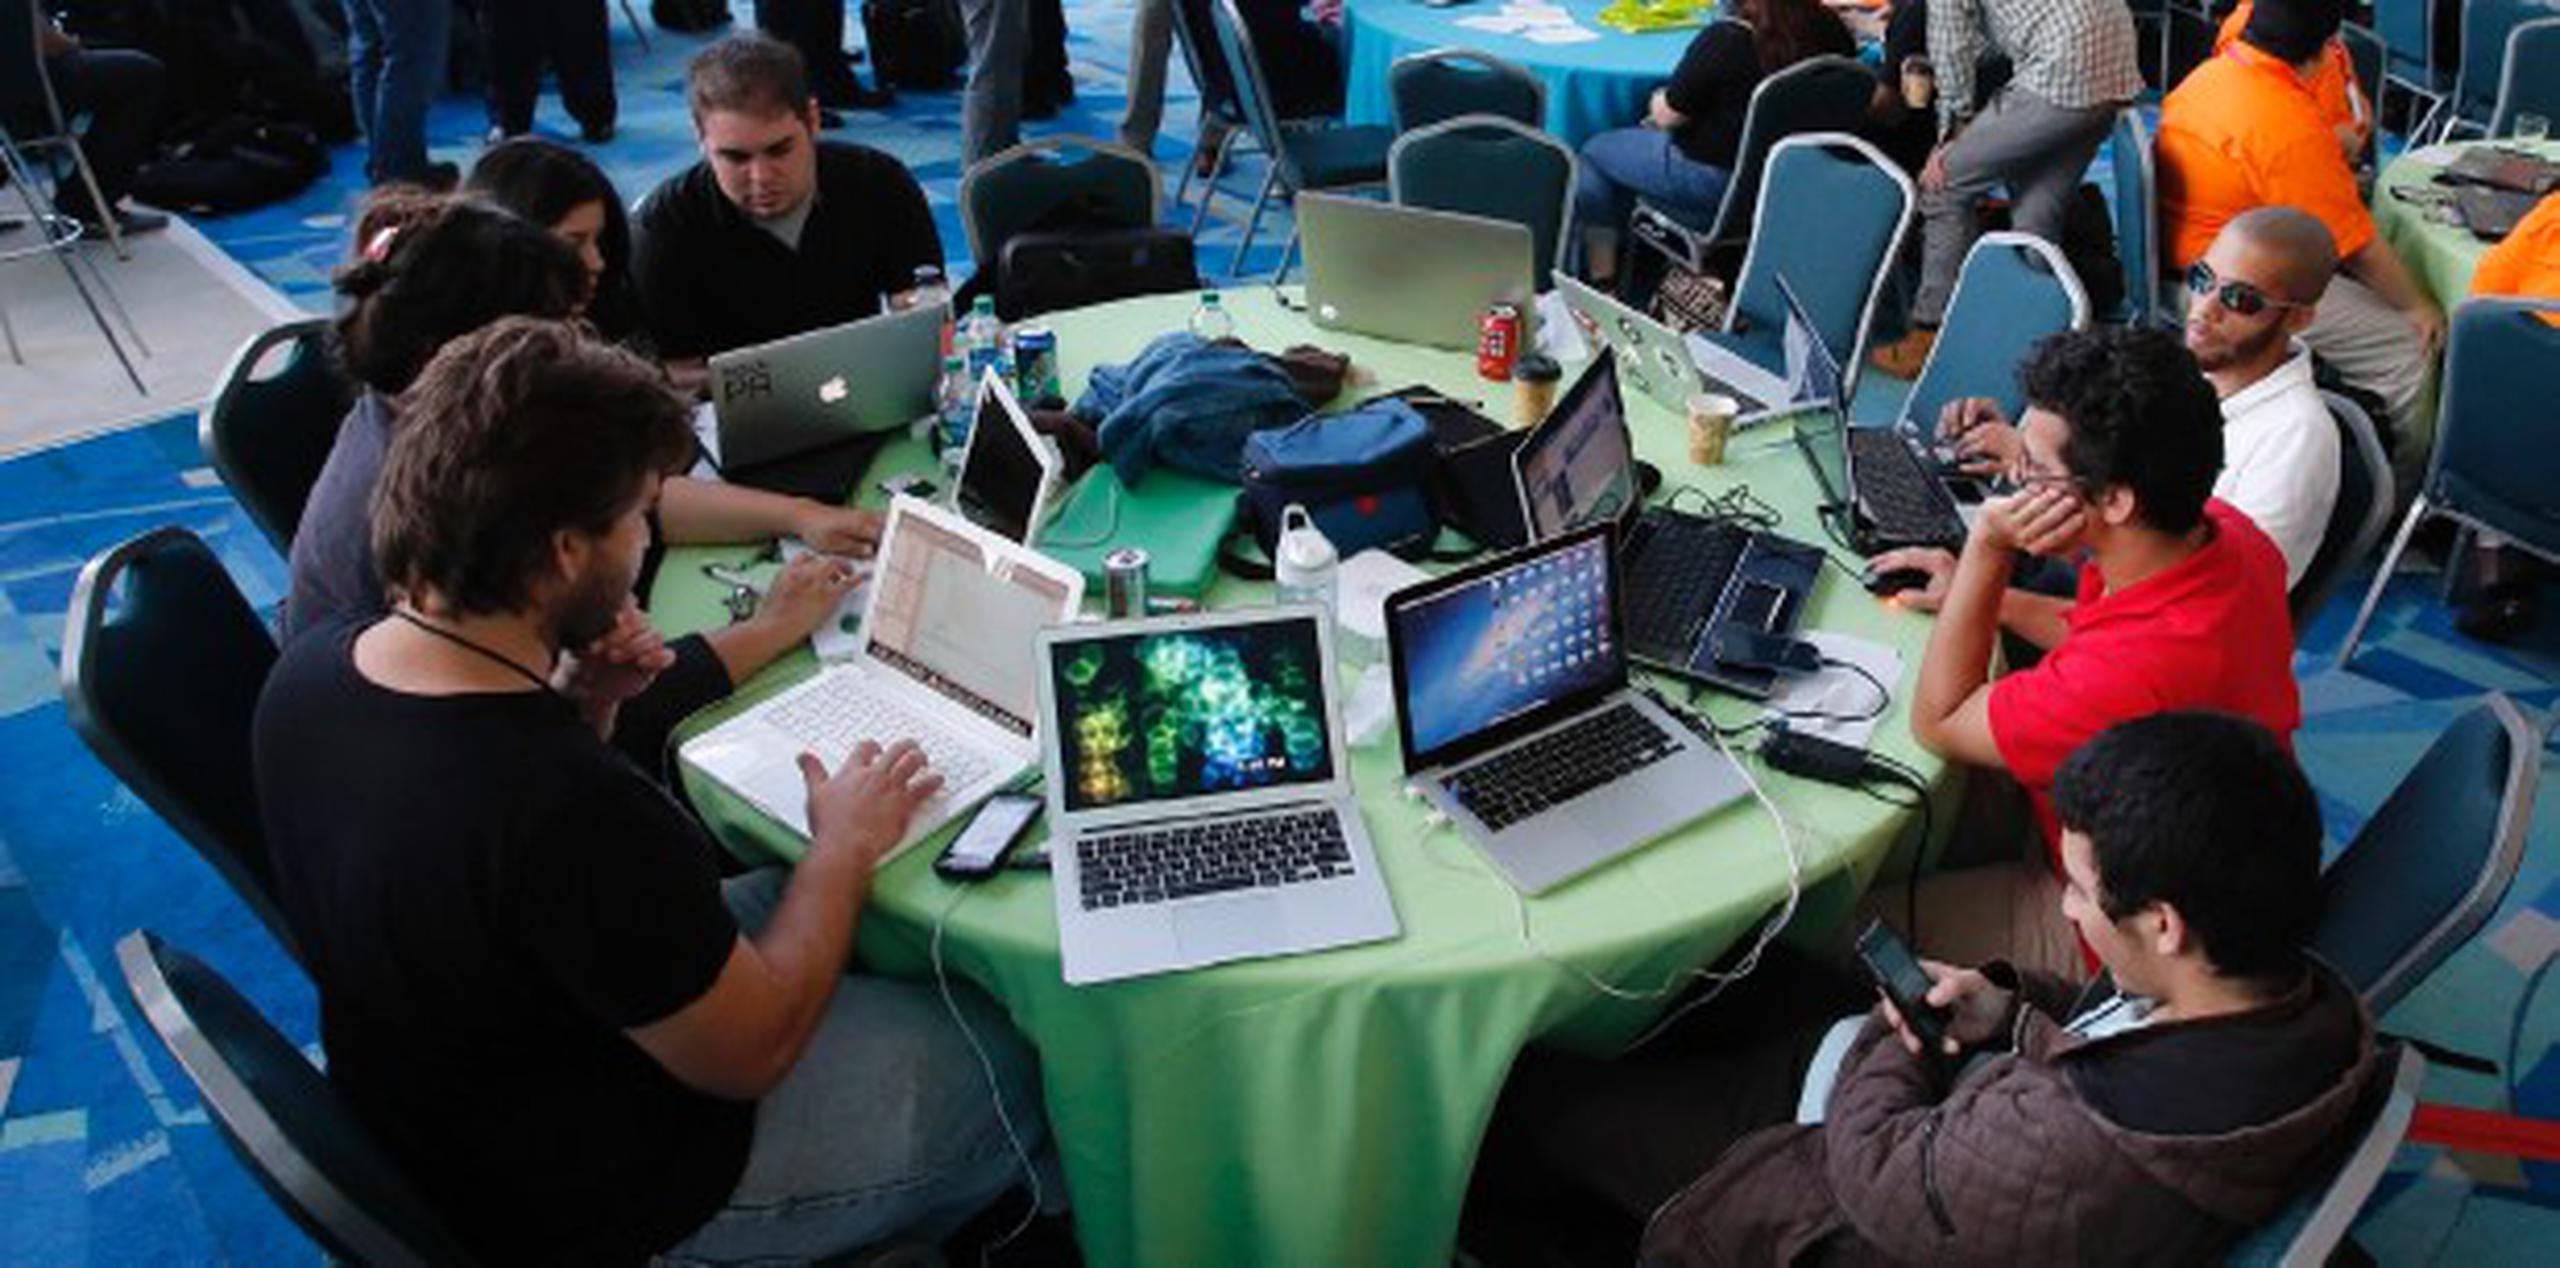 Esfuerzos recientes como la Cumbre de Tecnología, Puerto Rico Summit, han motivado a los futuros tecno-empresarios a desarrollar sus proyectos de programación con mayor entusiasmo. (Archivo)